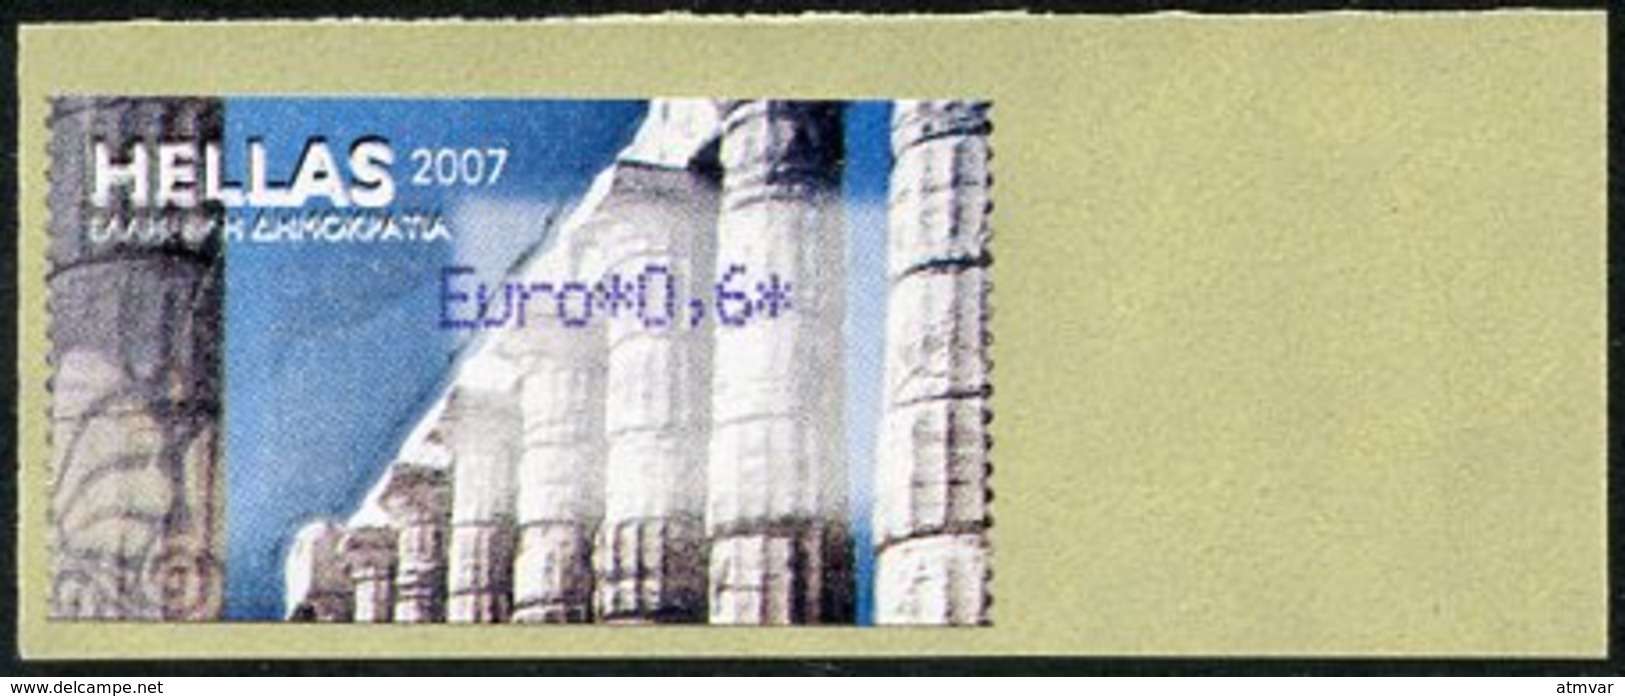 GREECE (2007) - ATM - Greek Temple Columns / Tempelsäulen / Columnas Templo Griego / Colonnes Temple - Euro 0,6 (2011) - Vignette [ATM]